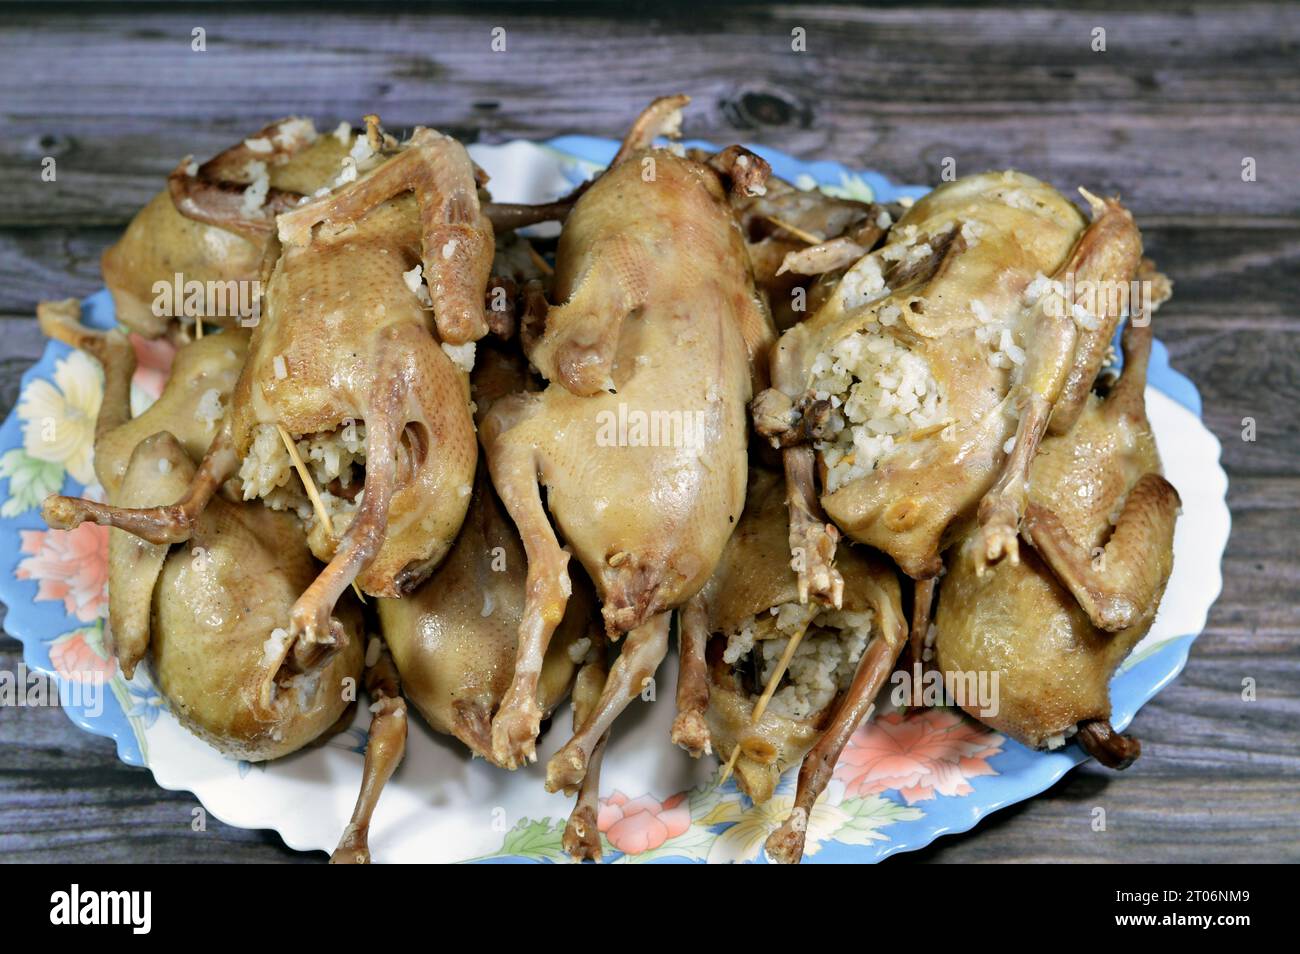 Pigeons farcis de riz blanc bouilli ou mahshi Hamam, bouillis jusqu'à ce qu'ils soient cuits et préparés pour être rôtis, frits dans l'huile chaude ou grillés, pigeons farcis est un v Banque D'Images